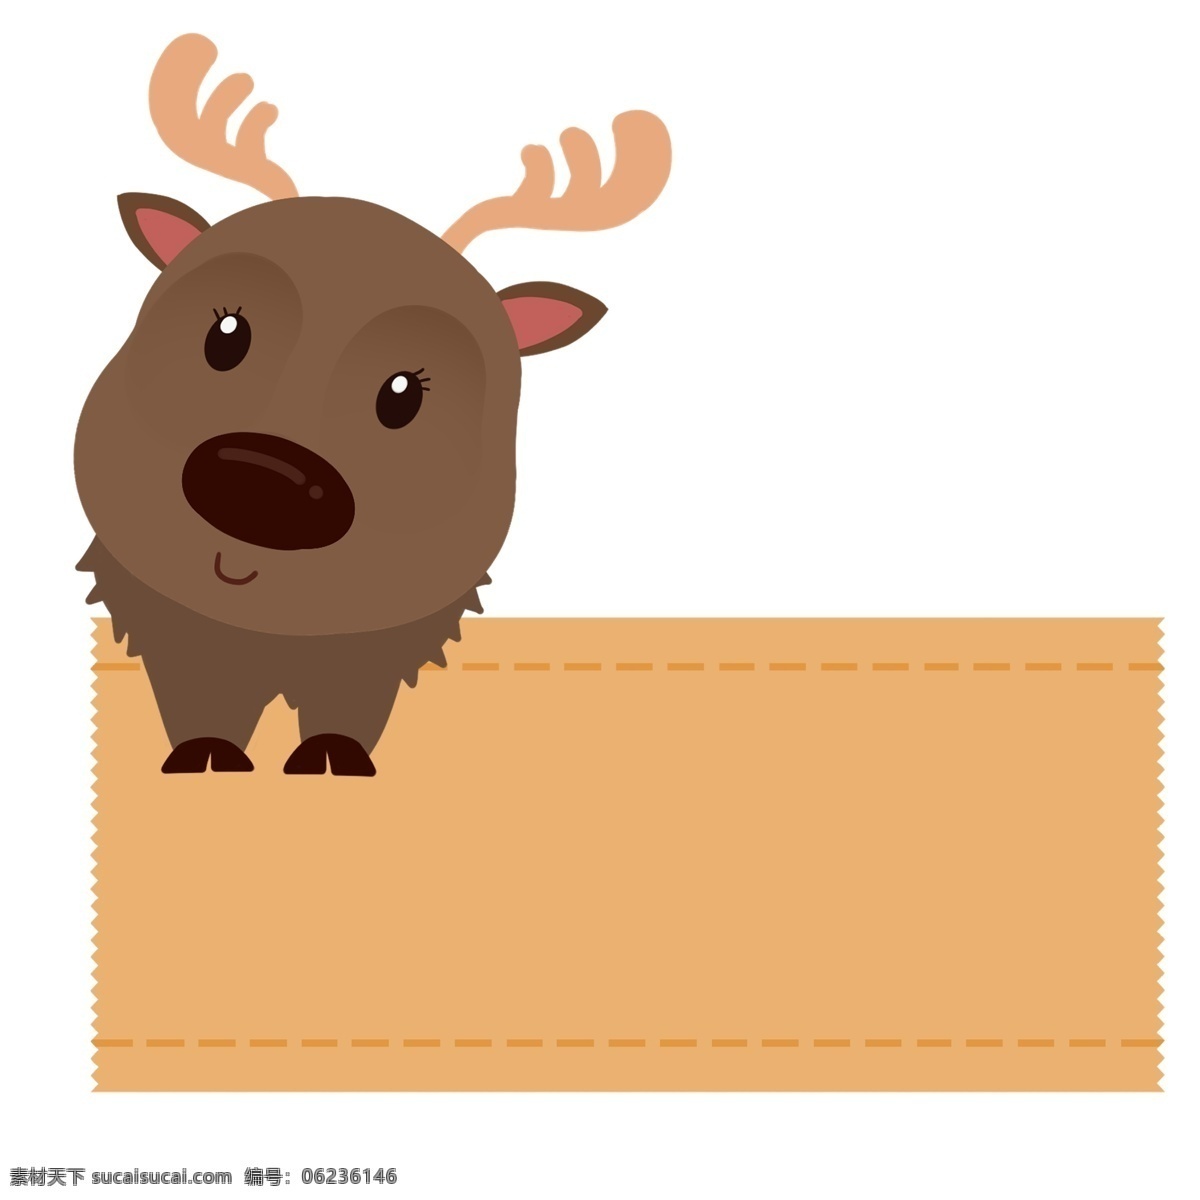 手绘 小鹿 边框 插画 褐色小鹿边框 手绘边框 可爱的边框 小动物边框 装饰边框 黄色边框 边框插画